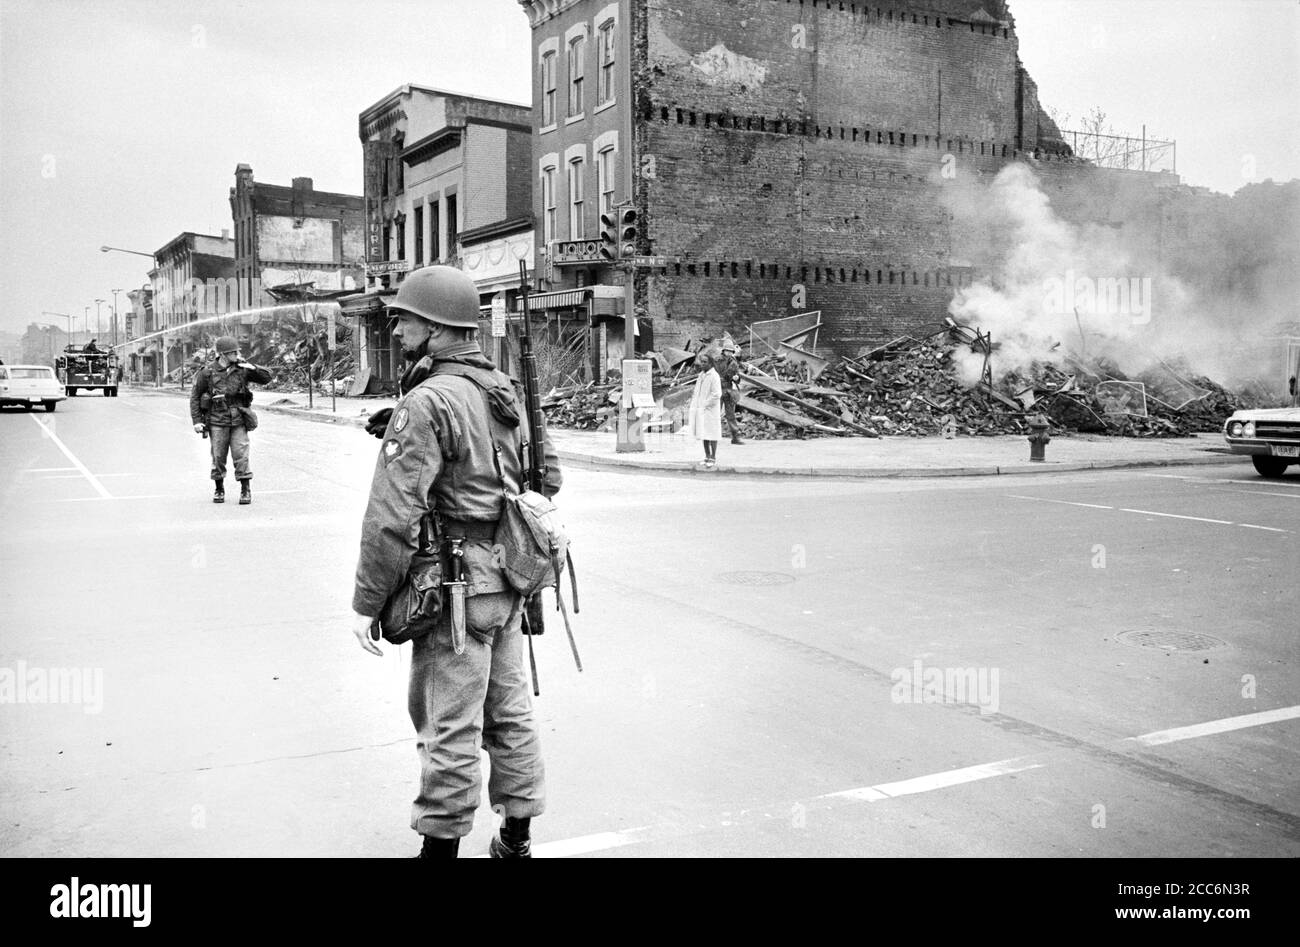 U.S. Soldat Wache in der Nähe von Ruinen von Gebäuden zerstört von Krawallen nach Dr. Martin Luther King Jr, Attentat, 7th and N Street, N.W., Washington, D.C., USA, Warren K. Leffler, 8. April 1968 Stockfoto